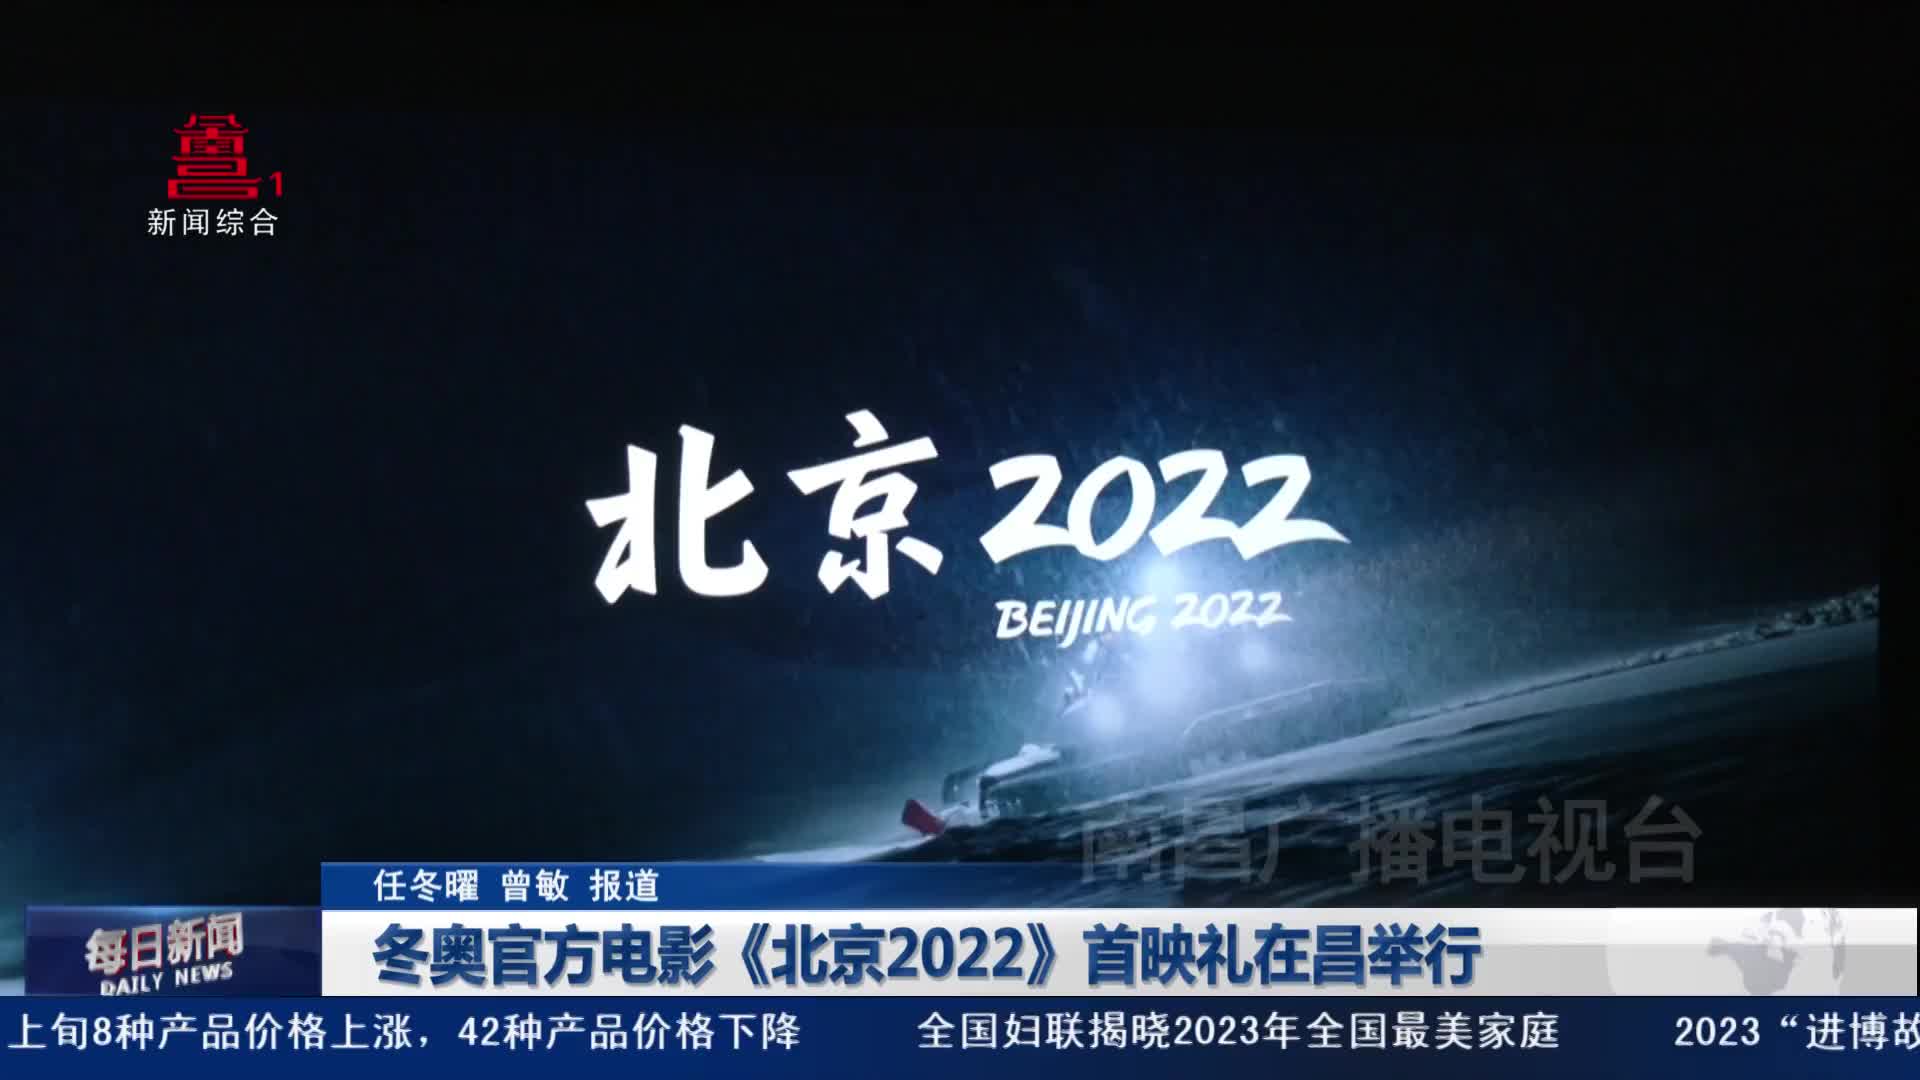 冬奥官方电影《北京2022》首映礼在昌举行